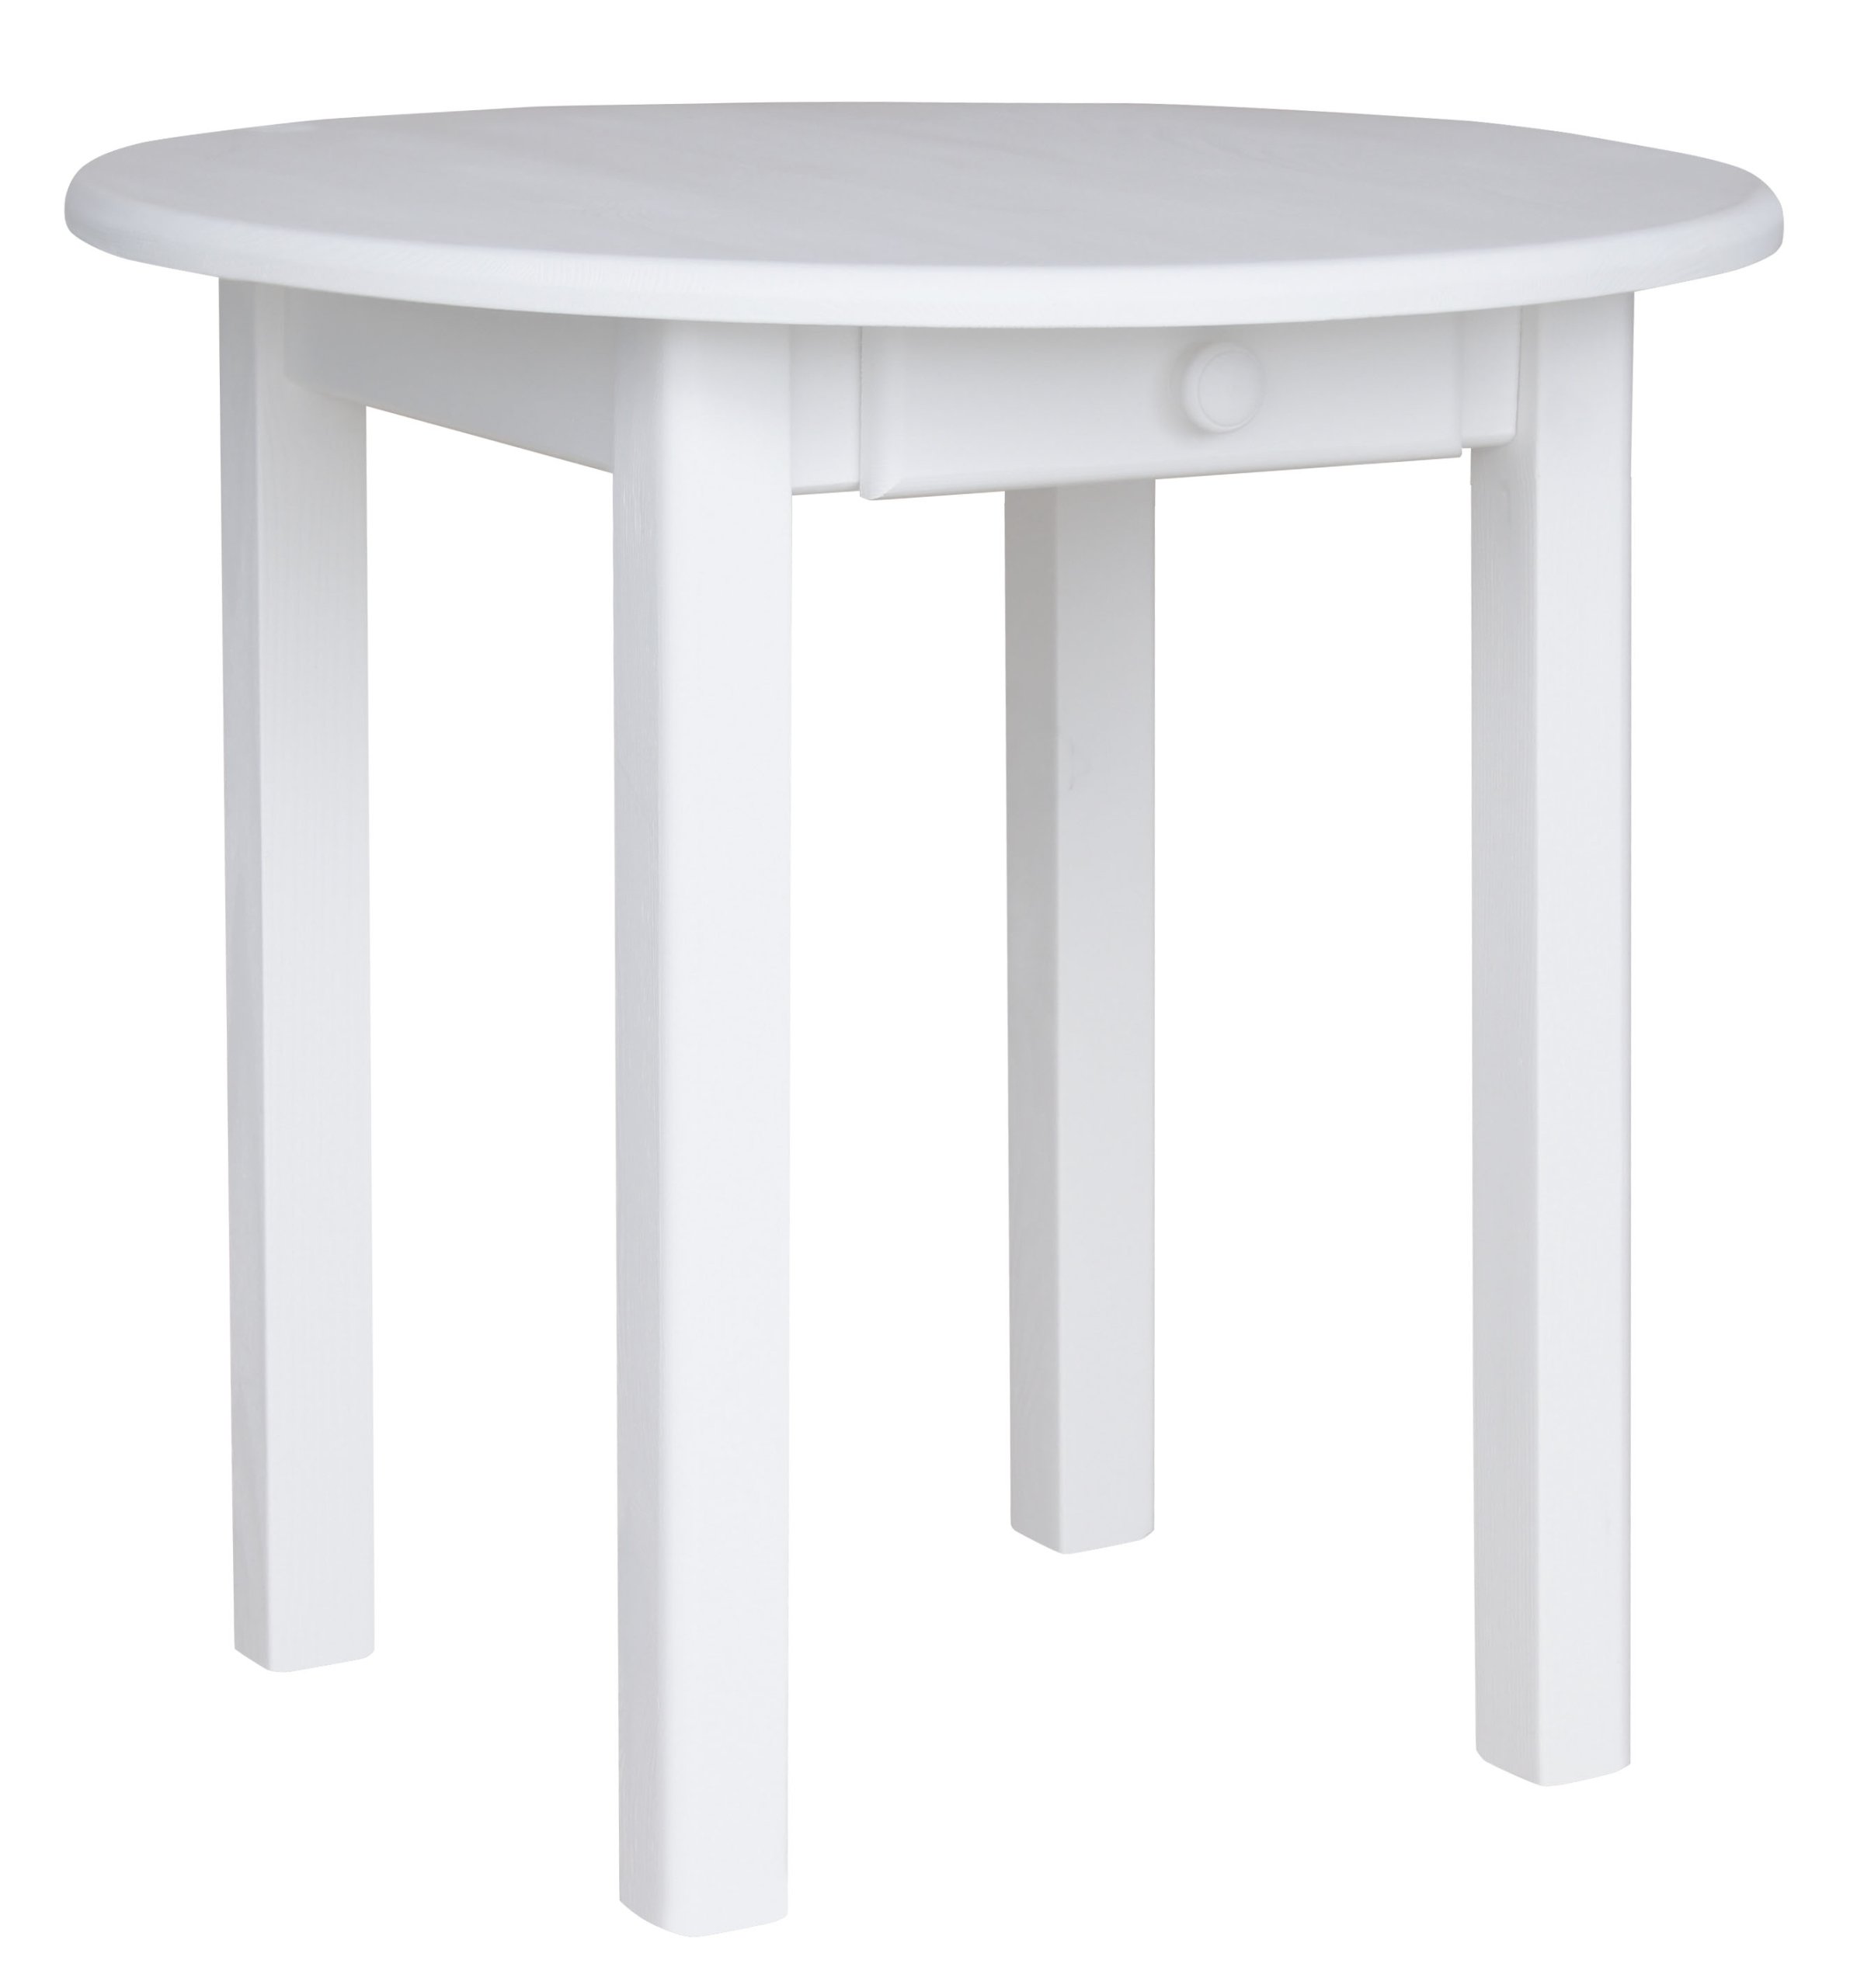 Стол 80 100 см. Стол икеа белый кухонный круглый. Hoff круглый стол 110. Стол круглый икеа белый раздвижной. Икеа стол кухонный белый 90*90.